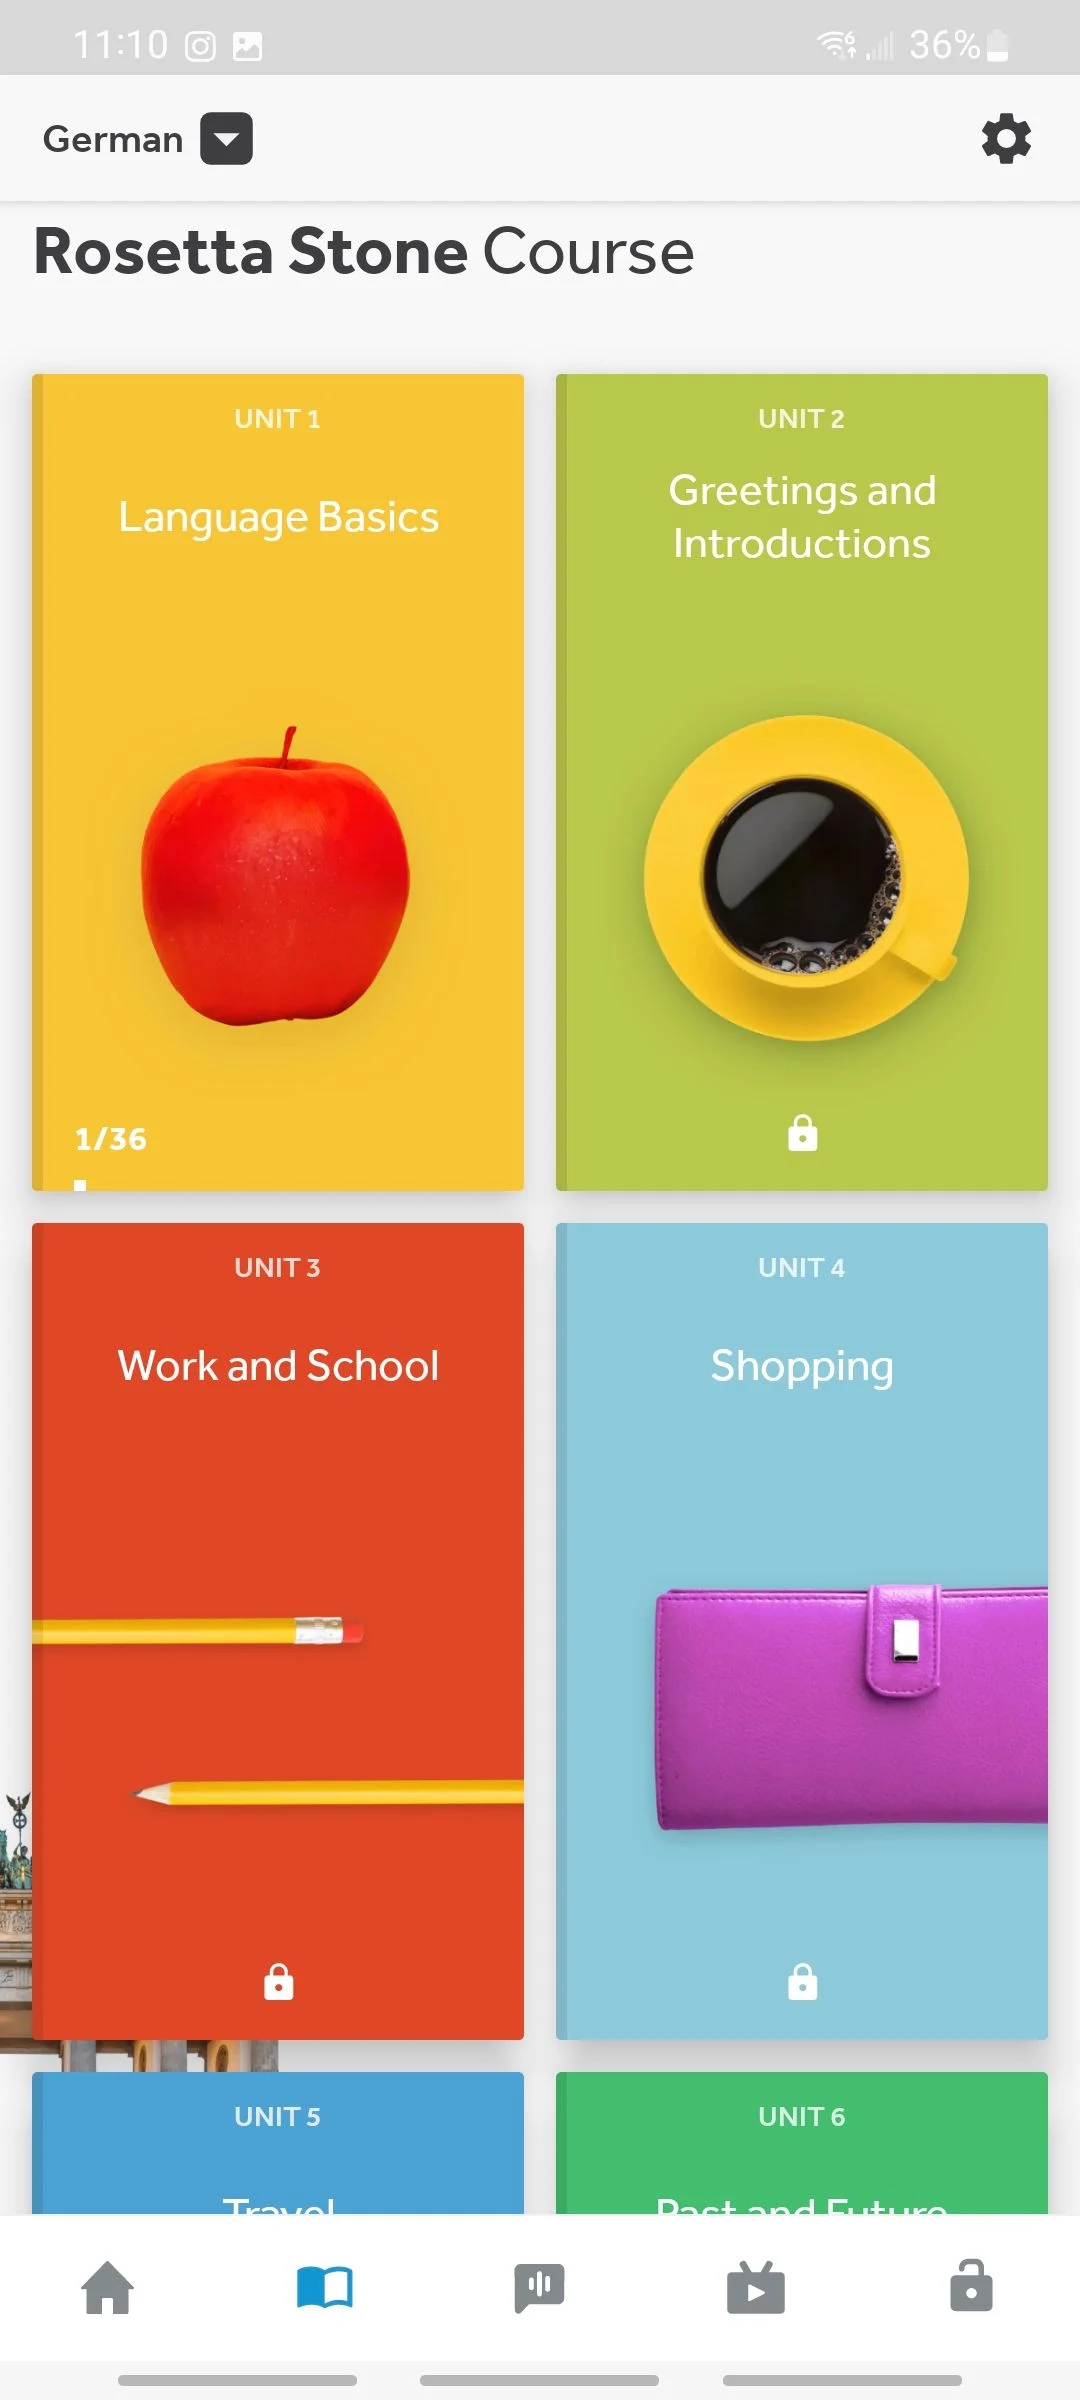 مقایسه Duolingo و Rosetta Stone: یادگیری و ساختار درس